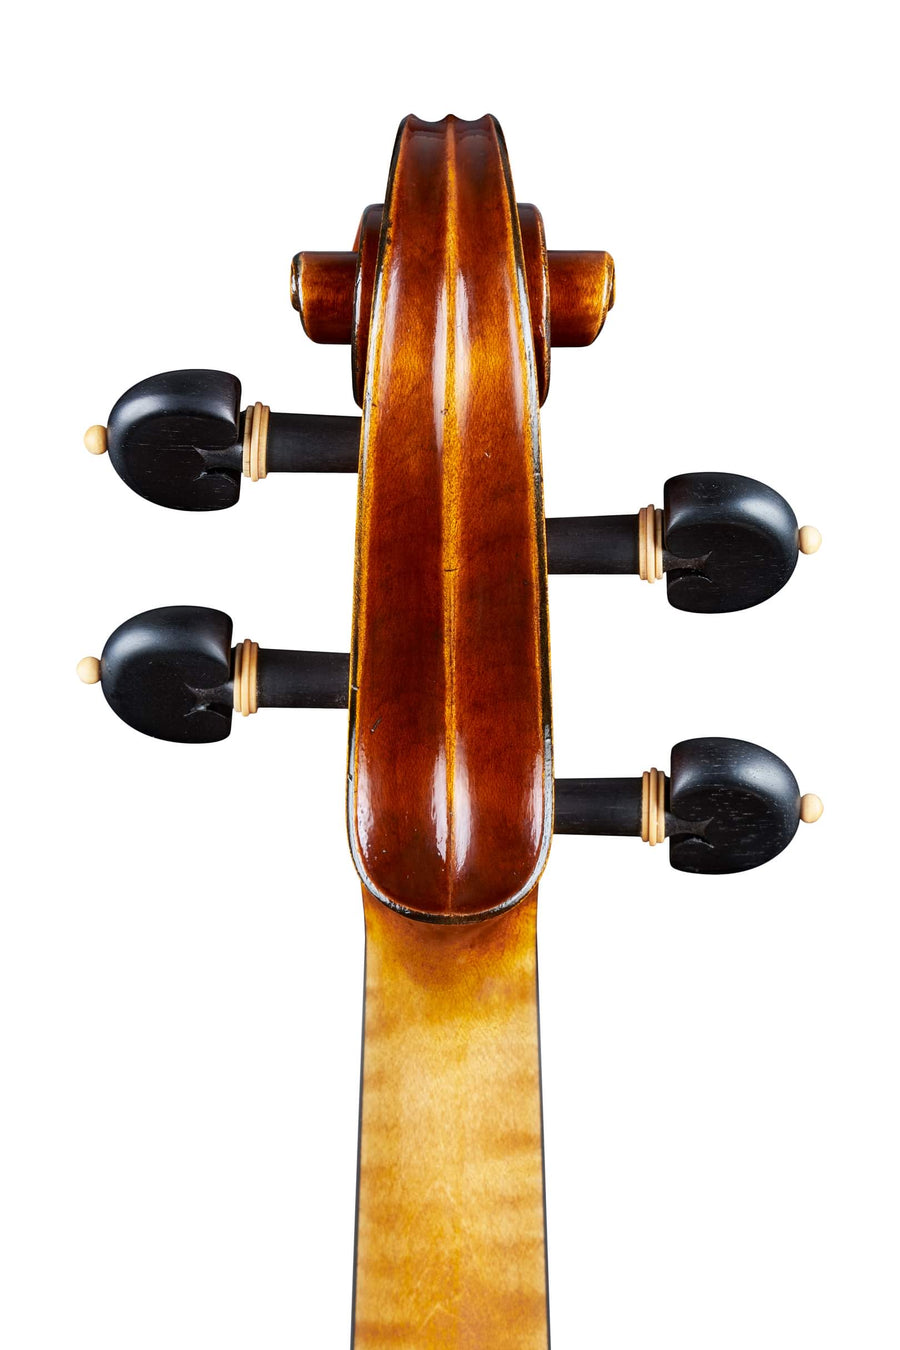 A Fine Modern Cremonese Violin by Georgi Nikolov, 2022.